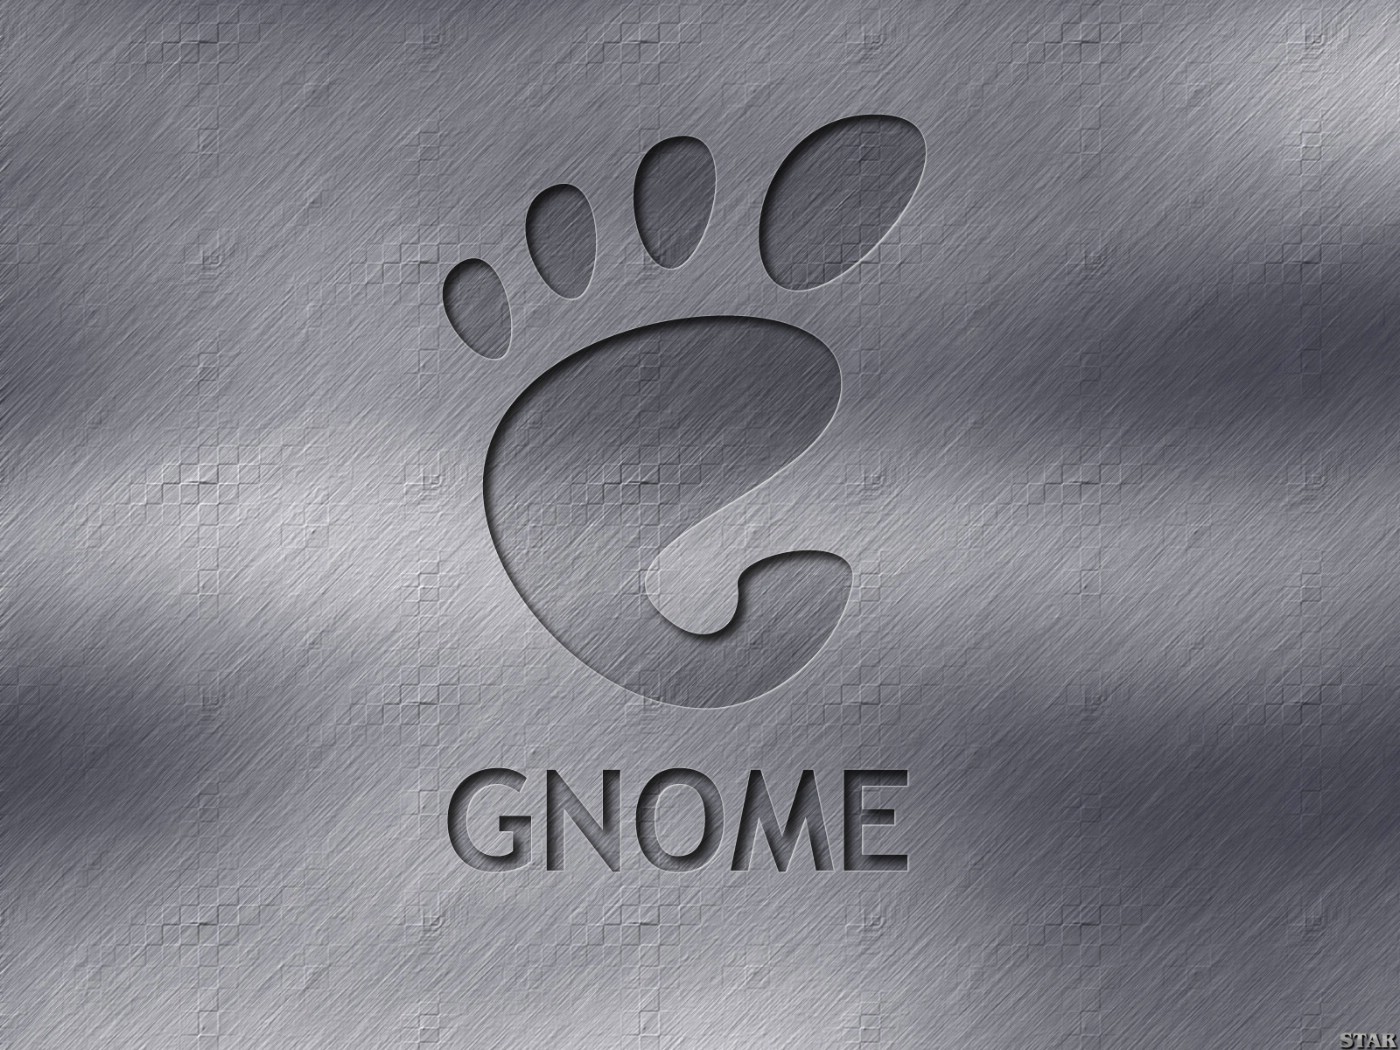 壁纸1400x10501600Gnome 1 6壁纸 Gnome 1600Gnome 第一辑壁纸 Gnome 1600Gnome 第一辑图片 Gnome 1600Gnome 第一辑素材 系统壁纸 系统图库 系统图片素材桌面壁纸